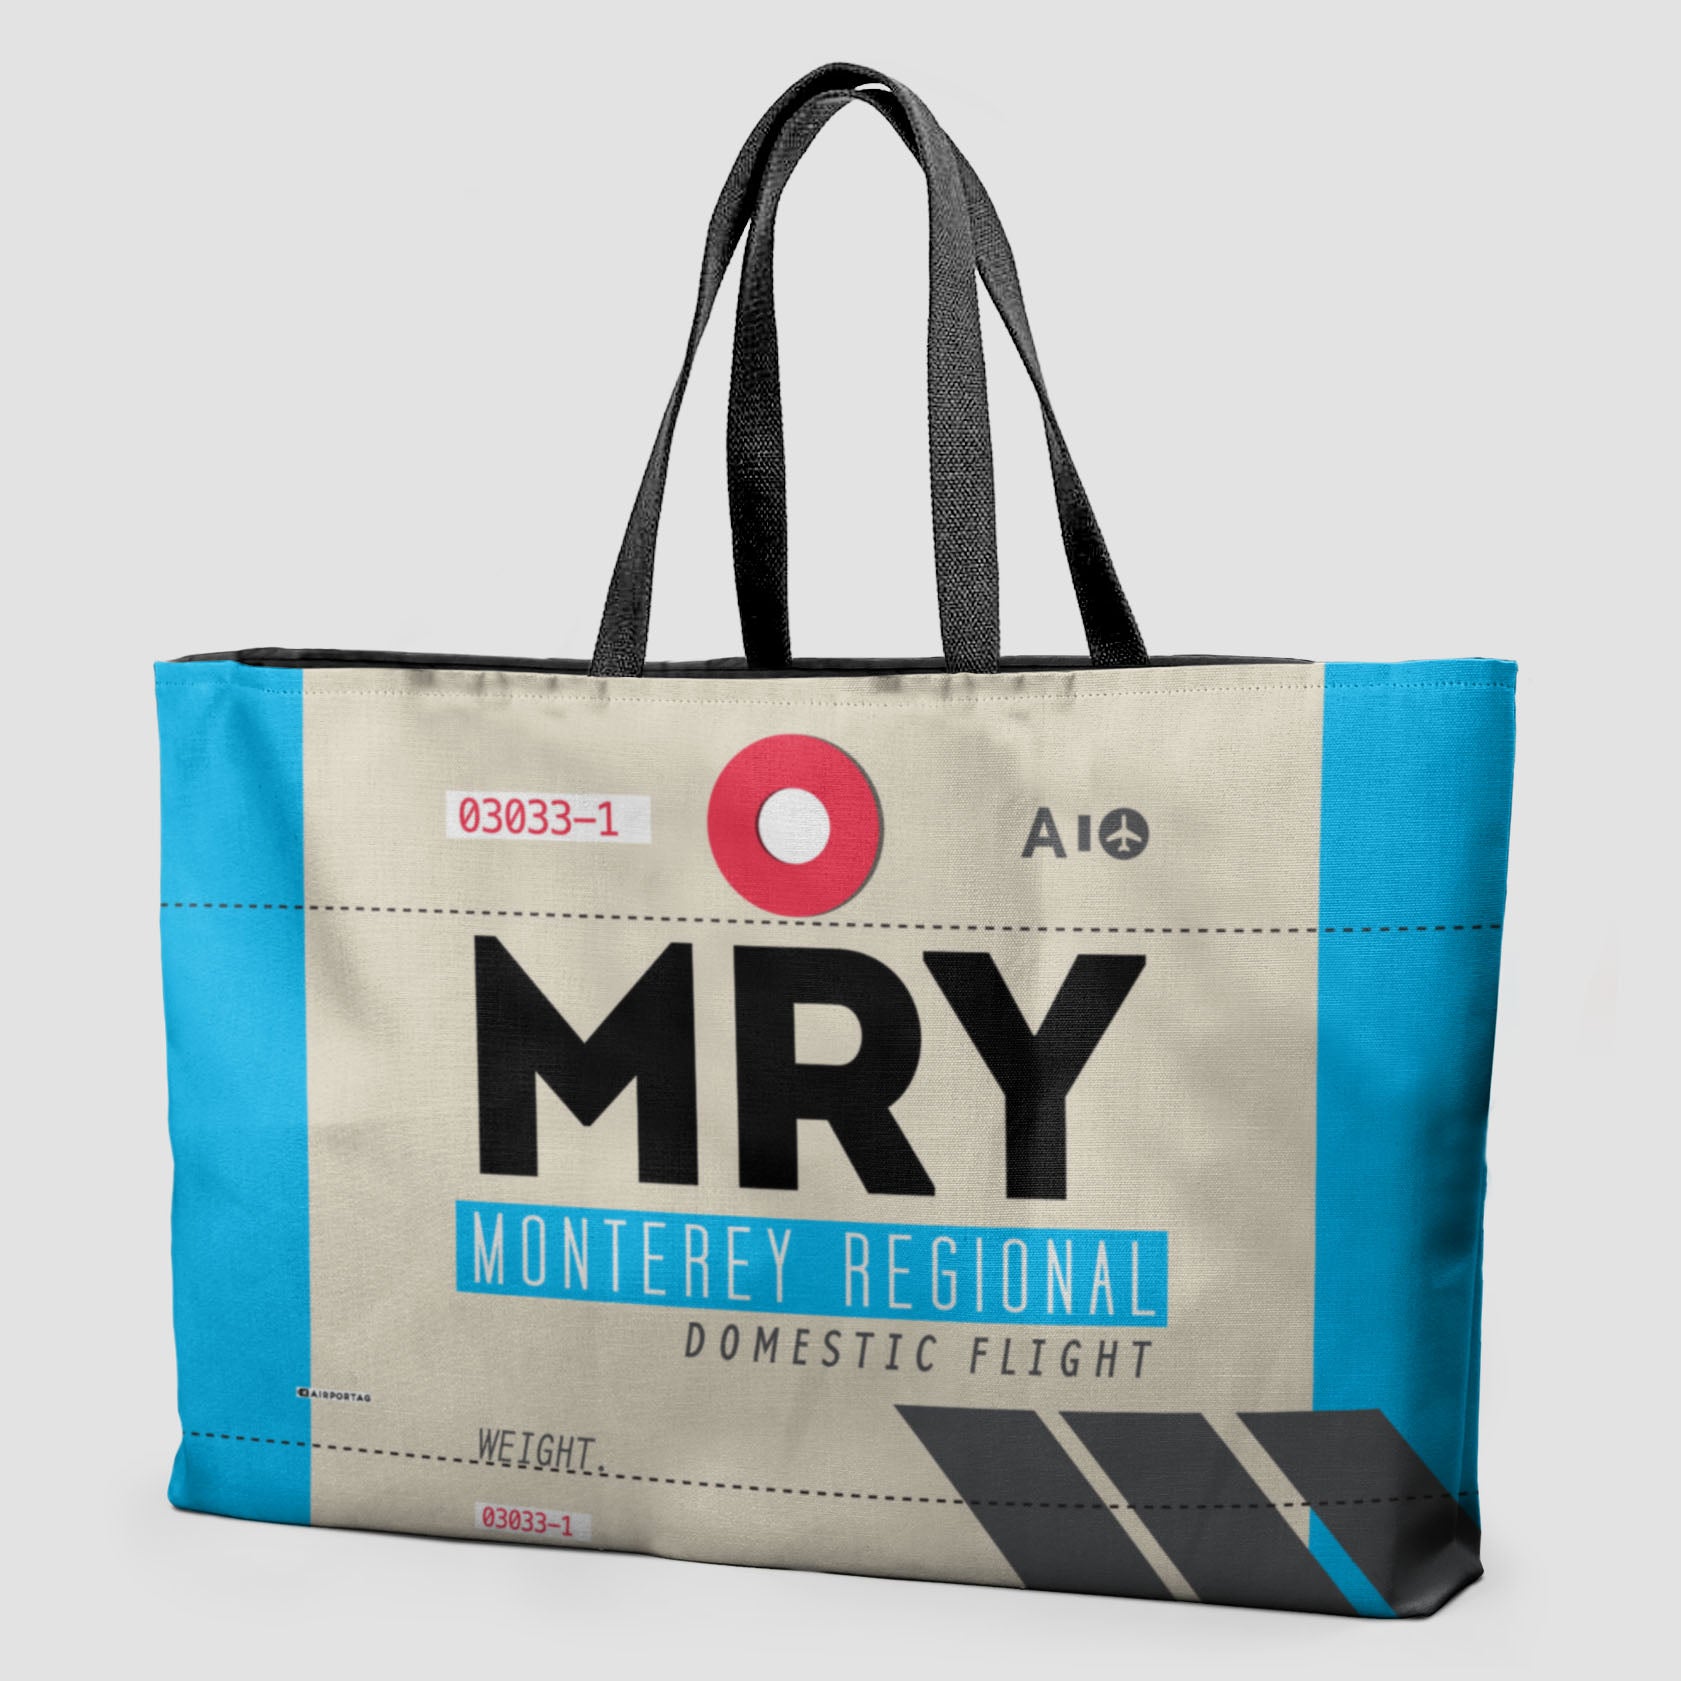 MRY - Weekender Bag - Airportag